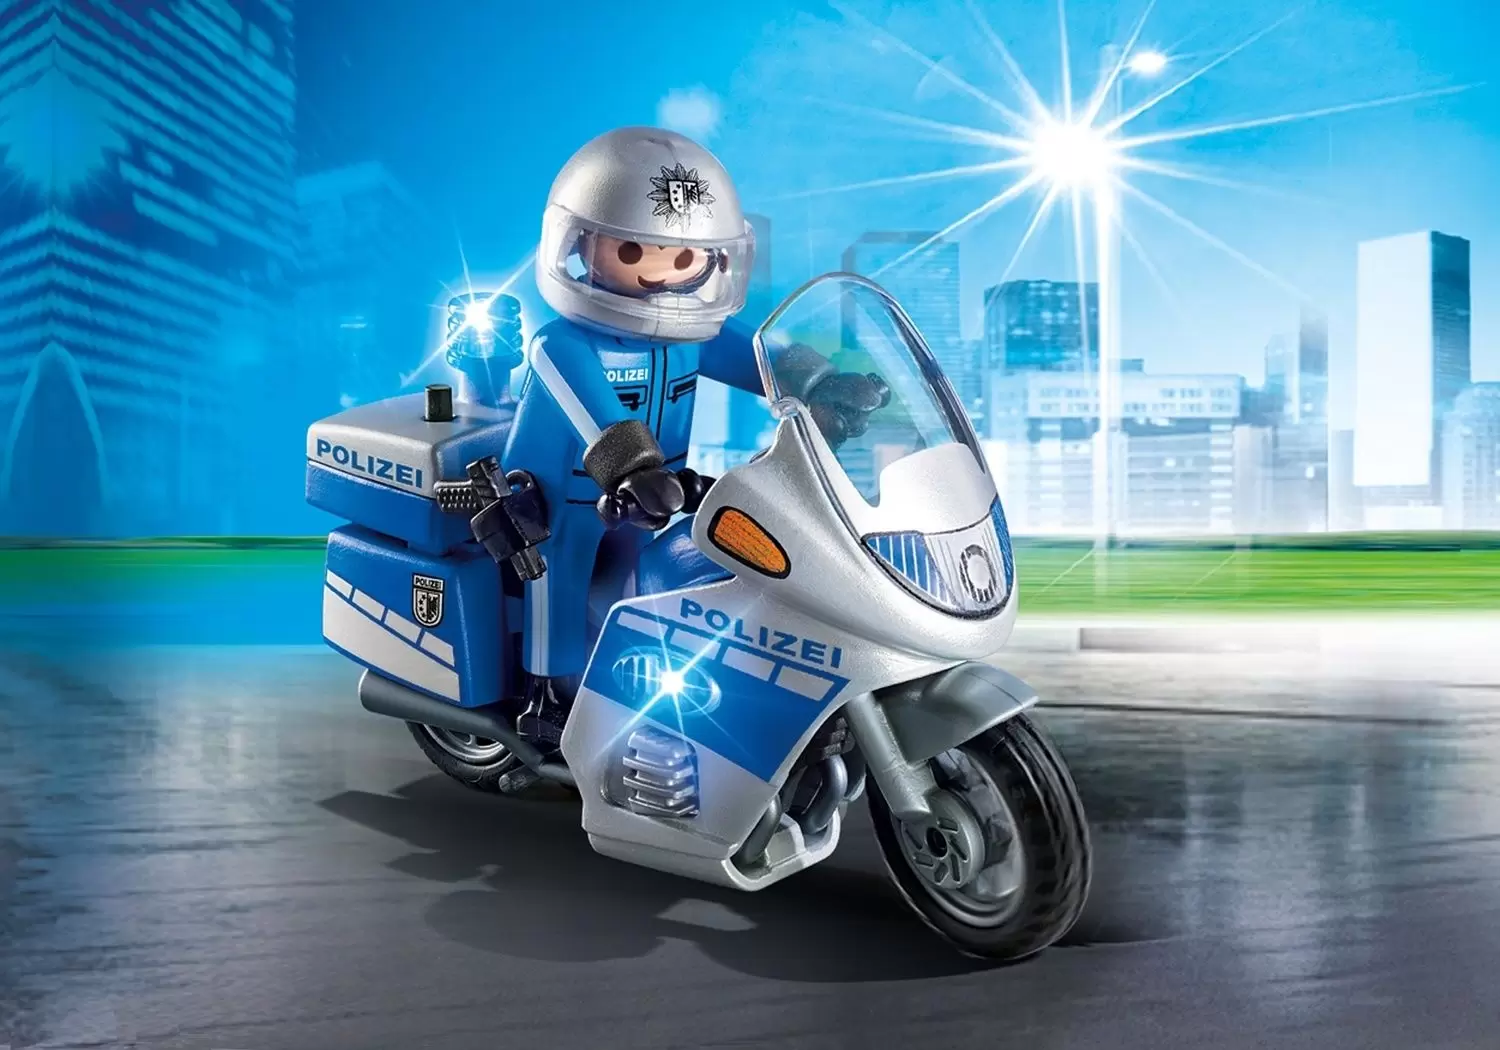 Playmobil Policier - Police Patrouille avec Motocycle à LED (Polizei)